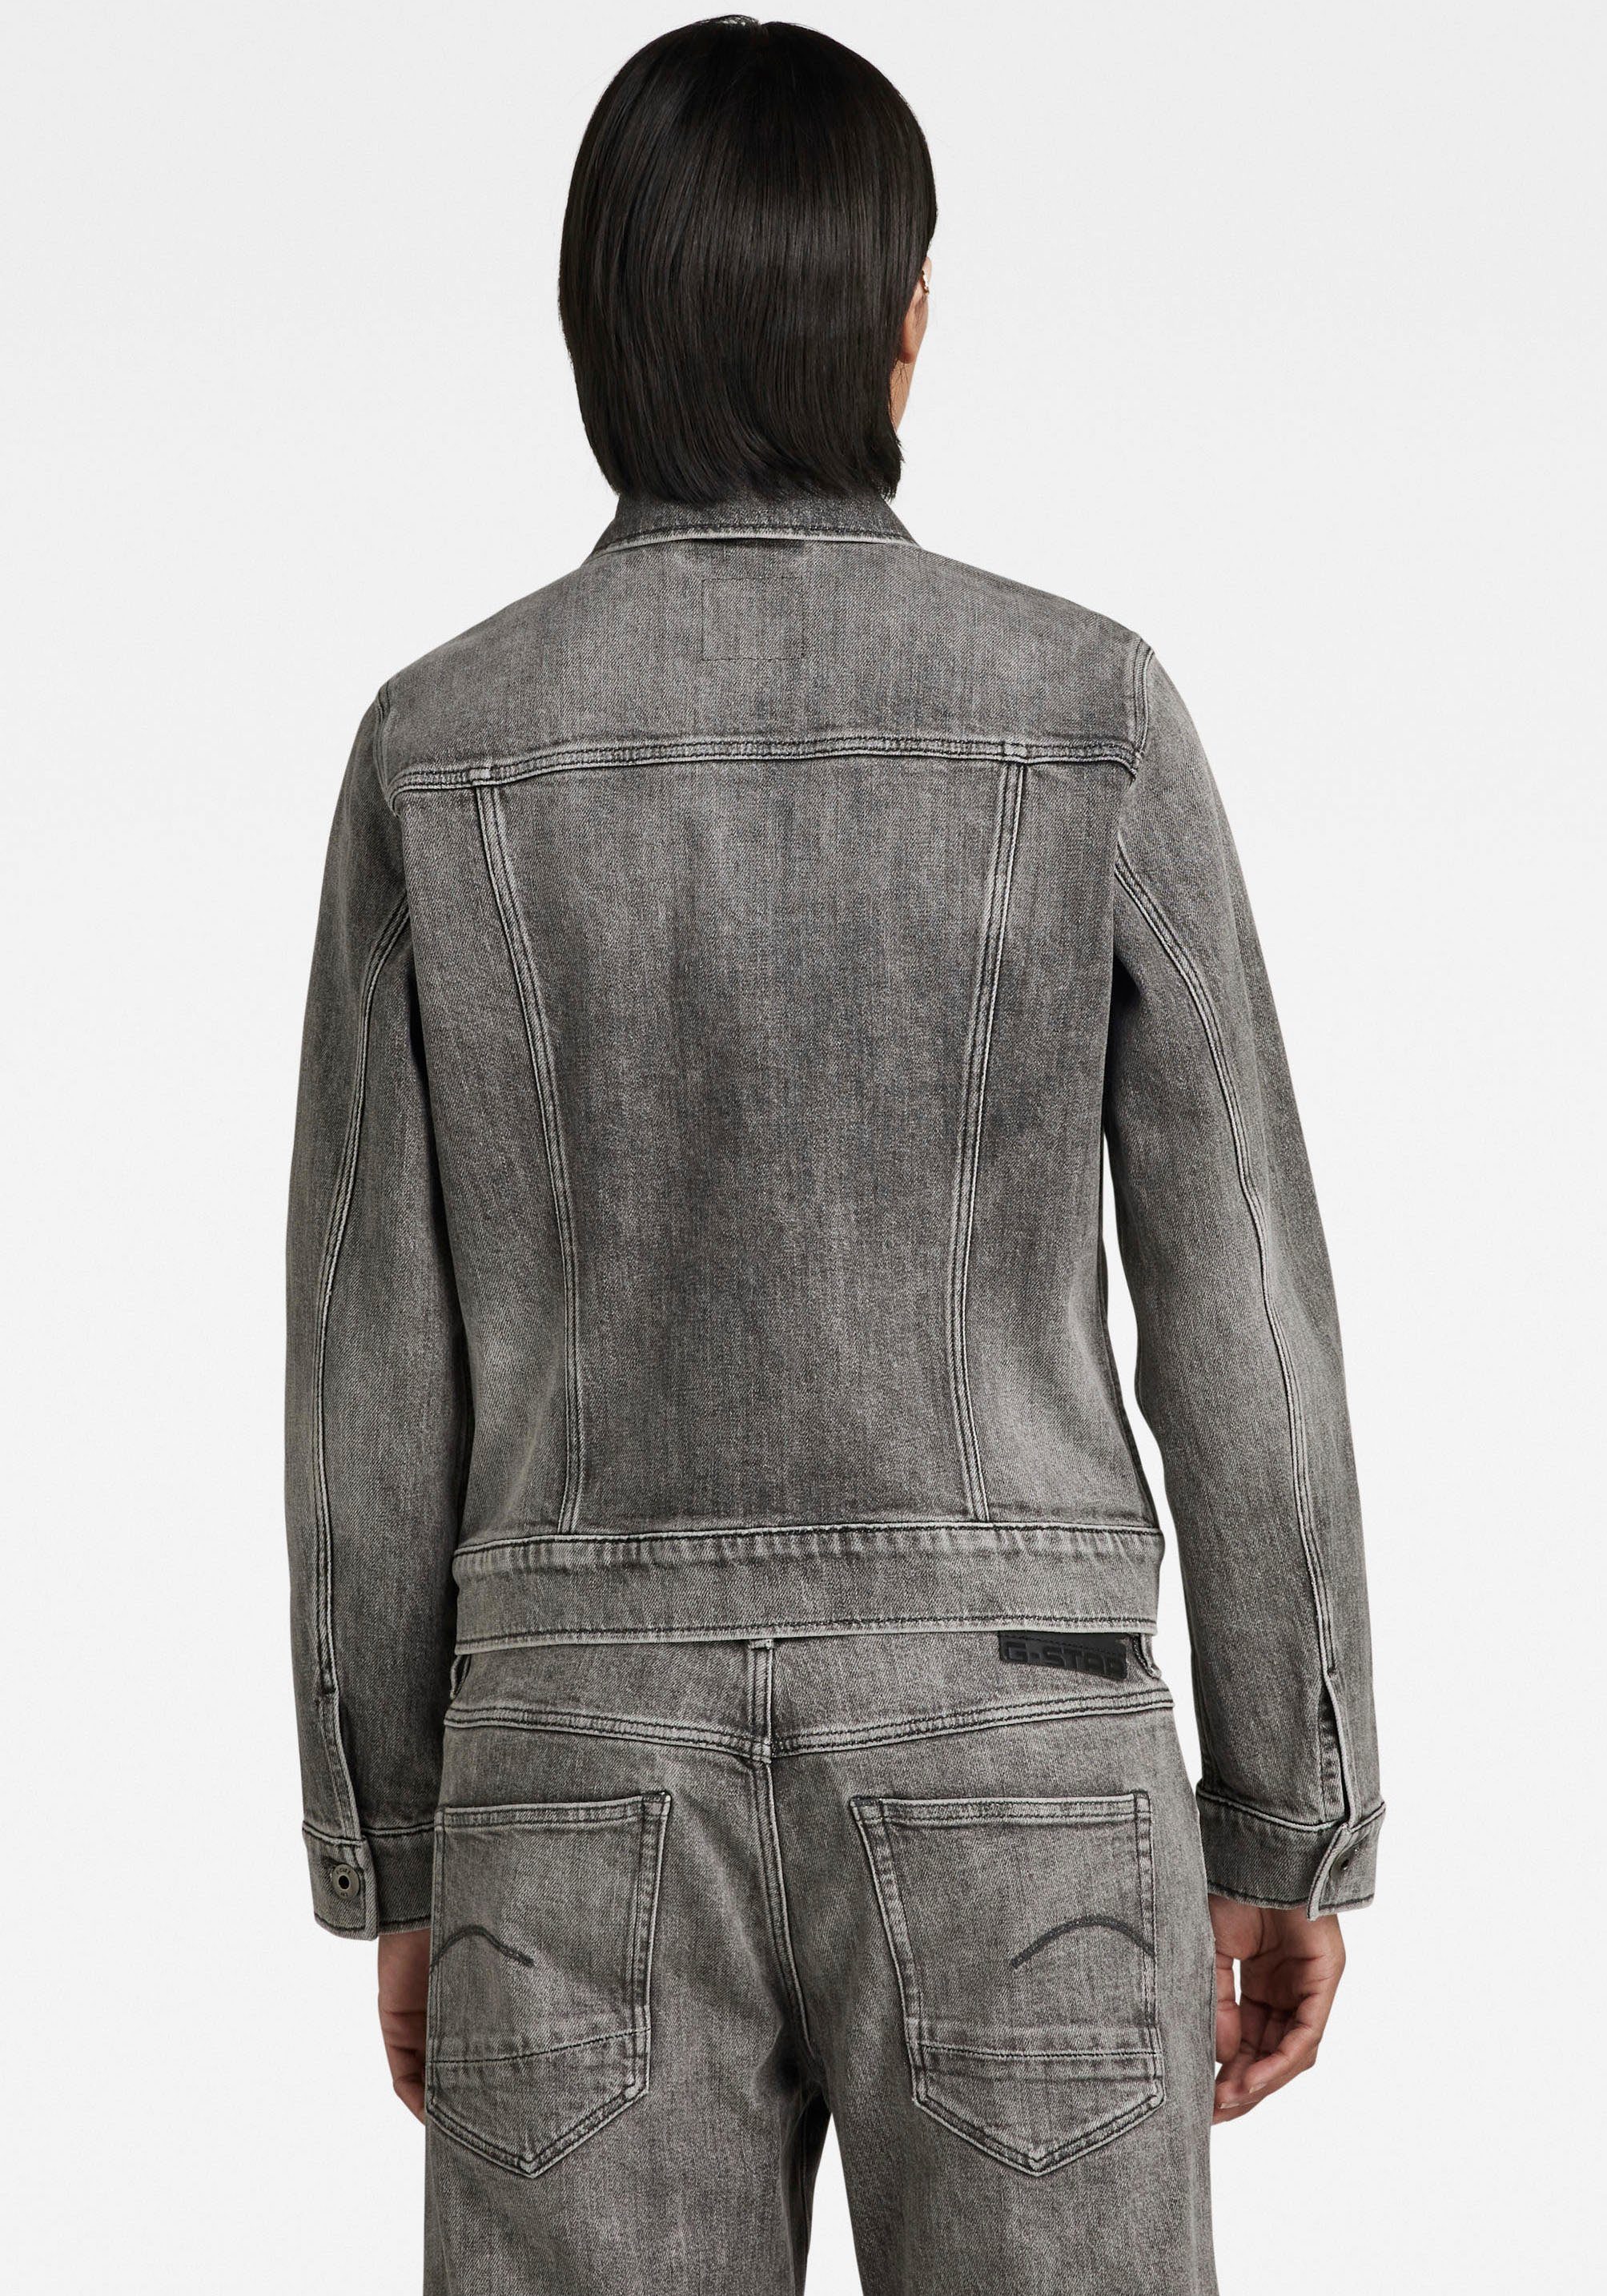 Jeansjacke aufgesetzten Ösenknöpfen mit jacket RAW faded mit Pattentaschen G-Star carbon Arc 3D